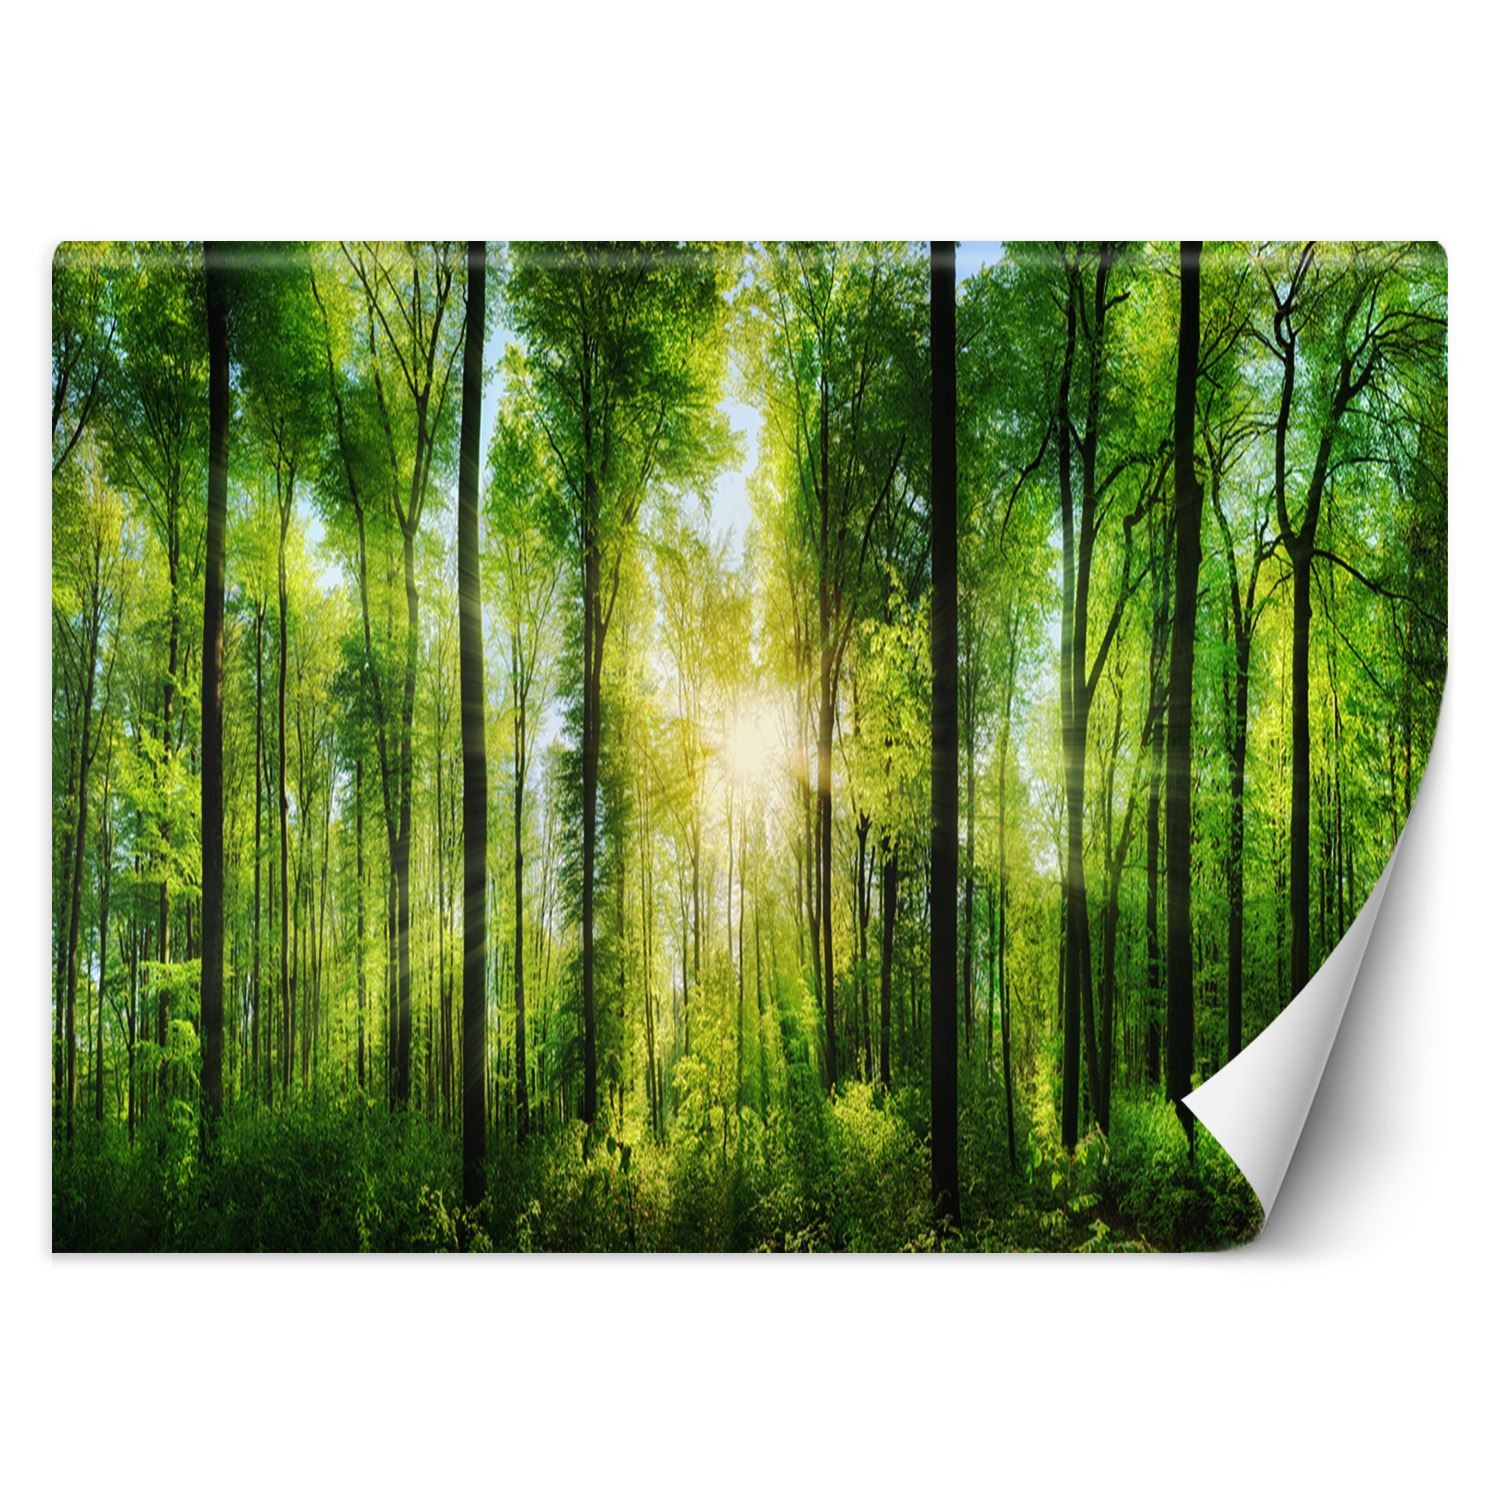 Trend24 – Behang – Zonnestralen In Een Groen Bos – Behangpapier – Fotobehang Natuur – Behang Woonkamer – 250x175x2 cm – Incl. behanglijm